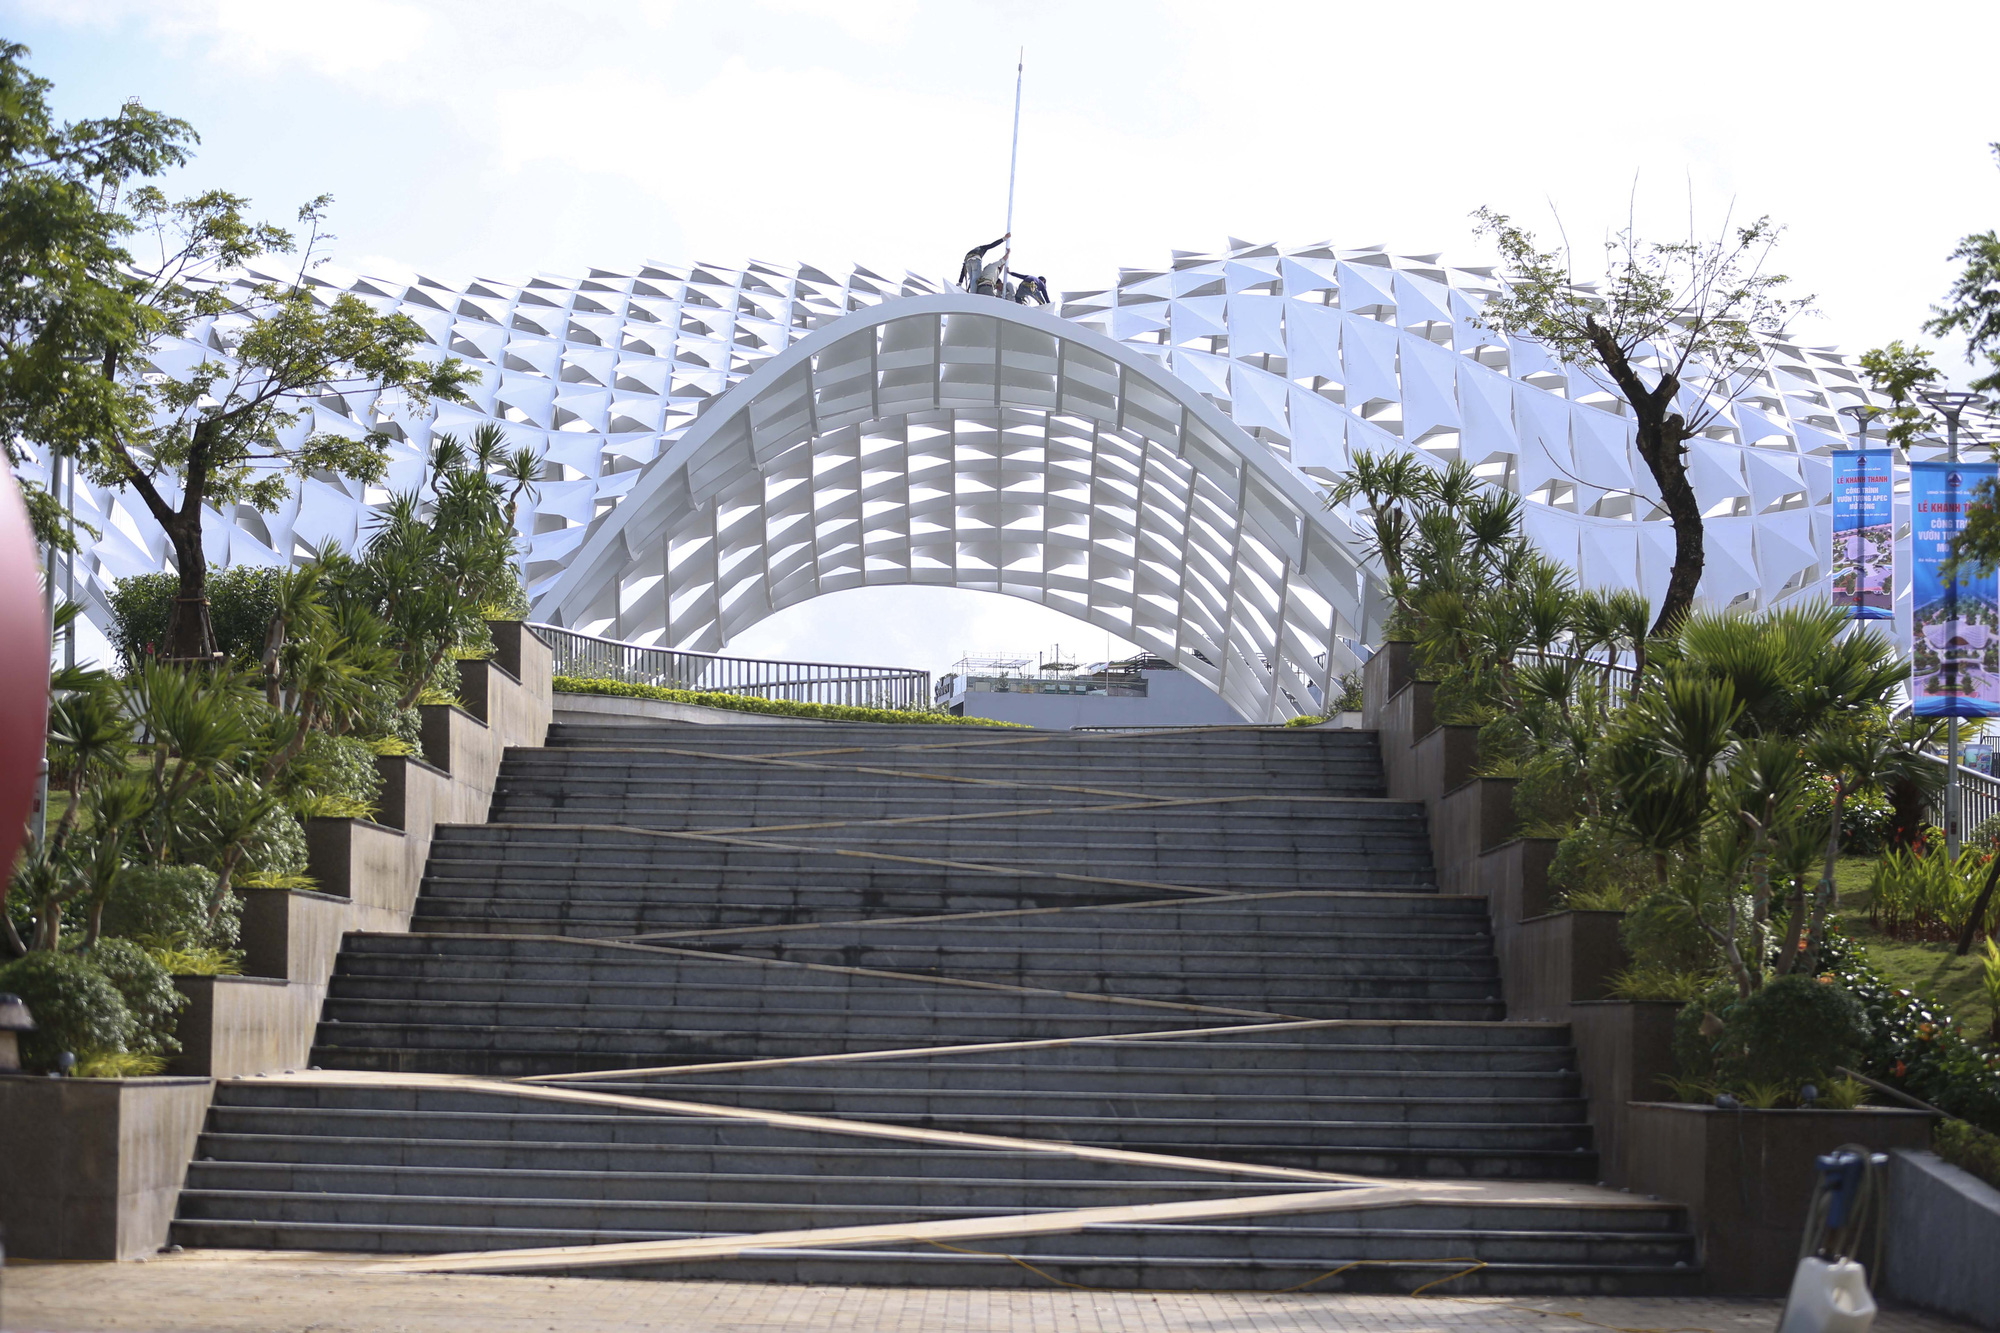 Cận cảnh công viên hơn 700 tỷ đồng sắp khánh thành ở Đà Nẵng - Ảnh 14.